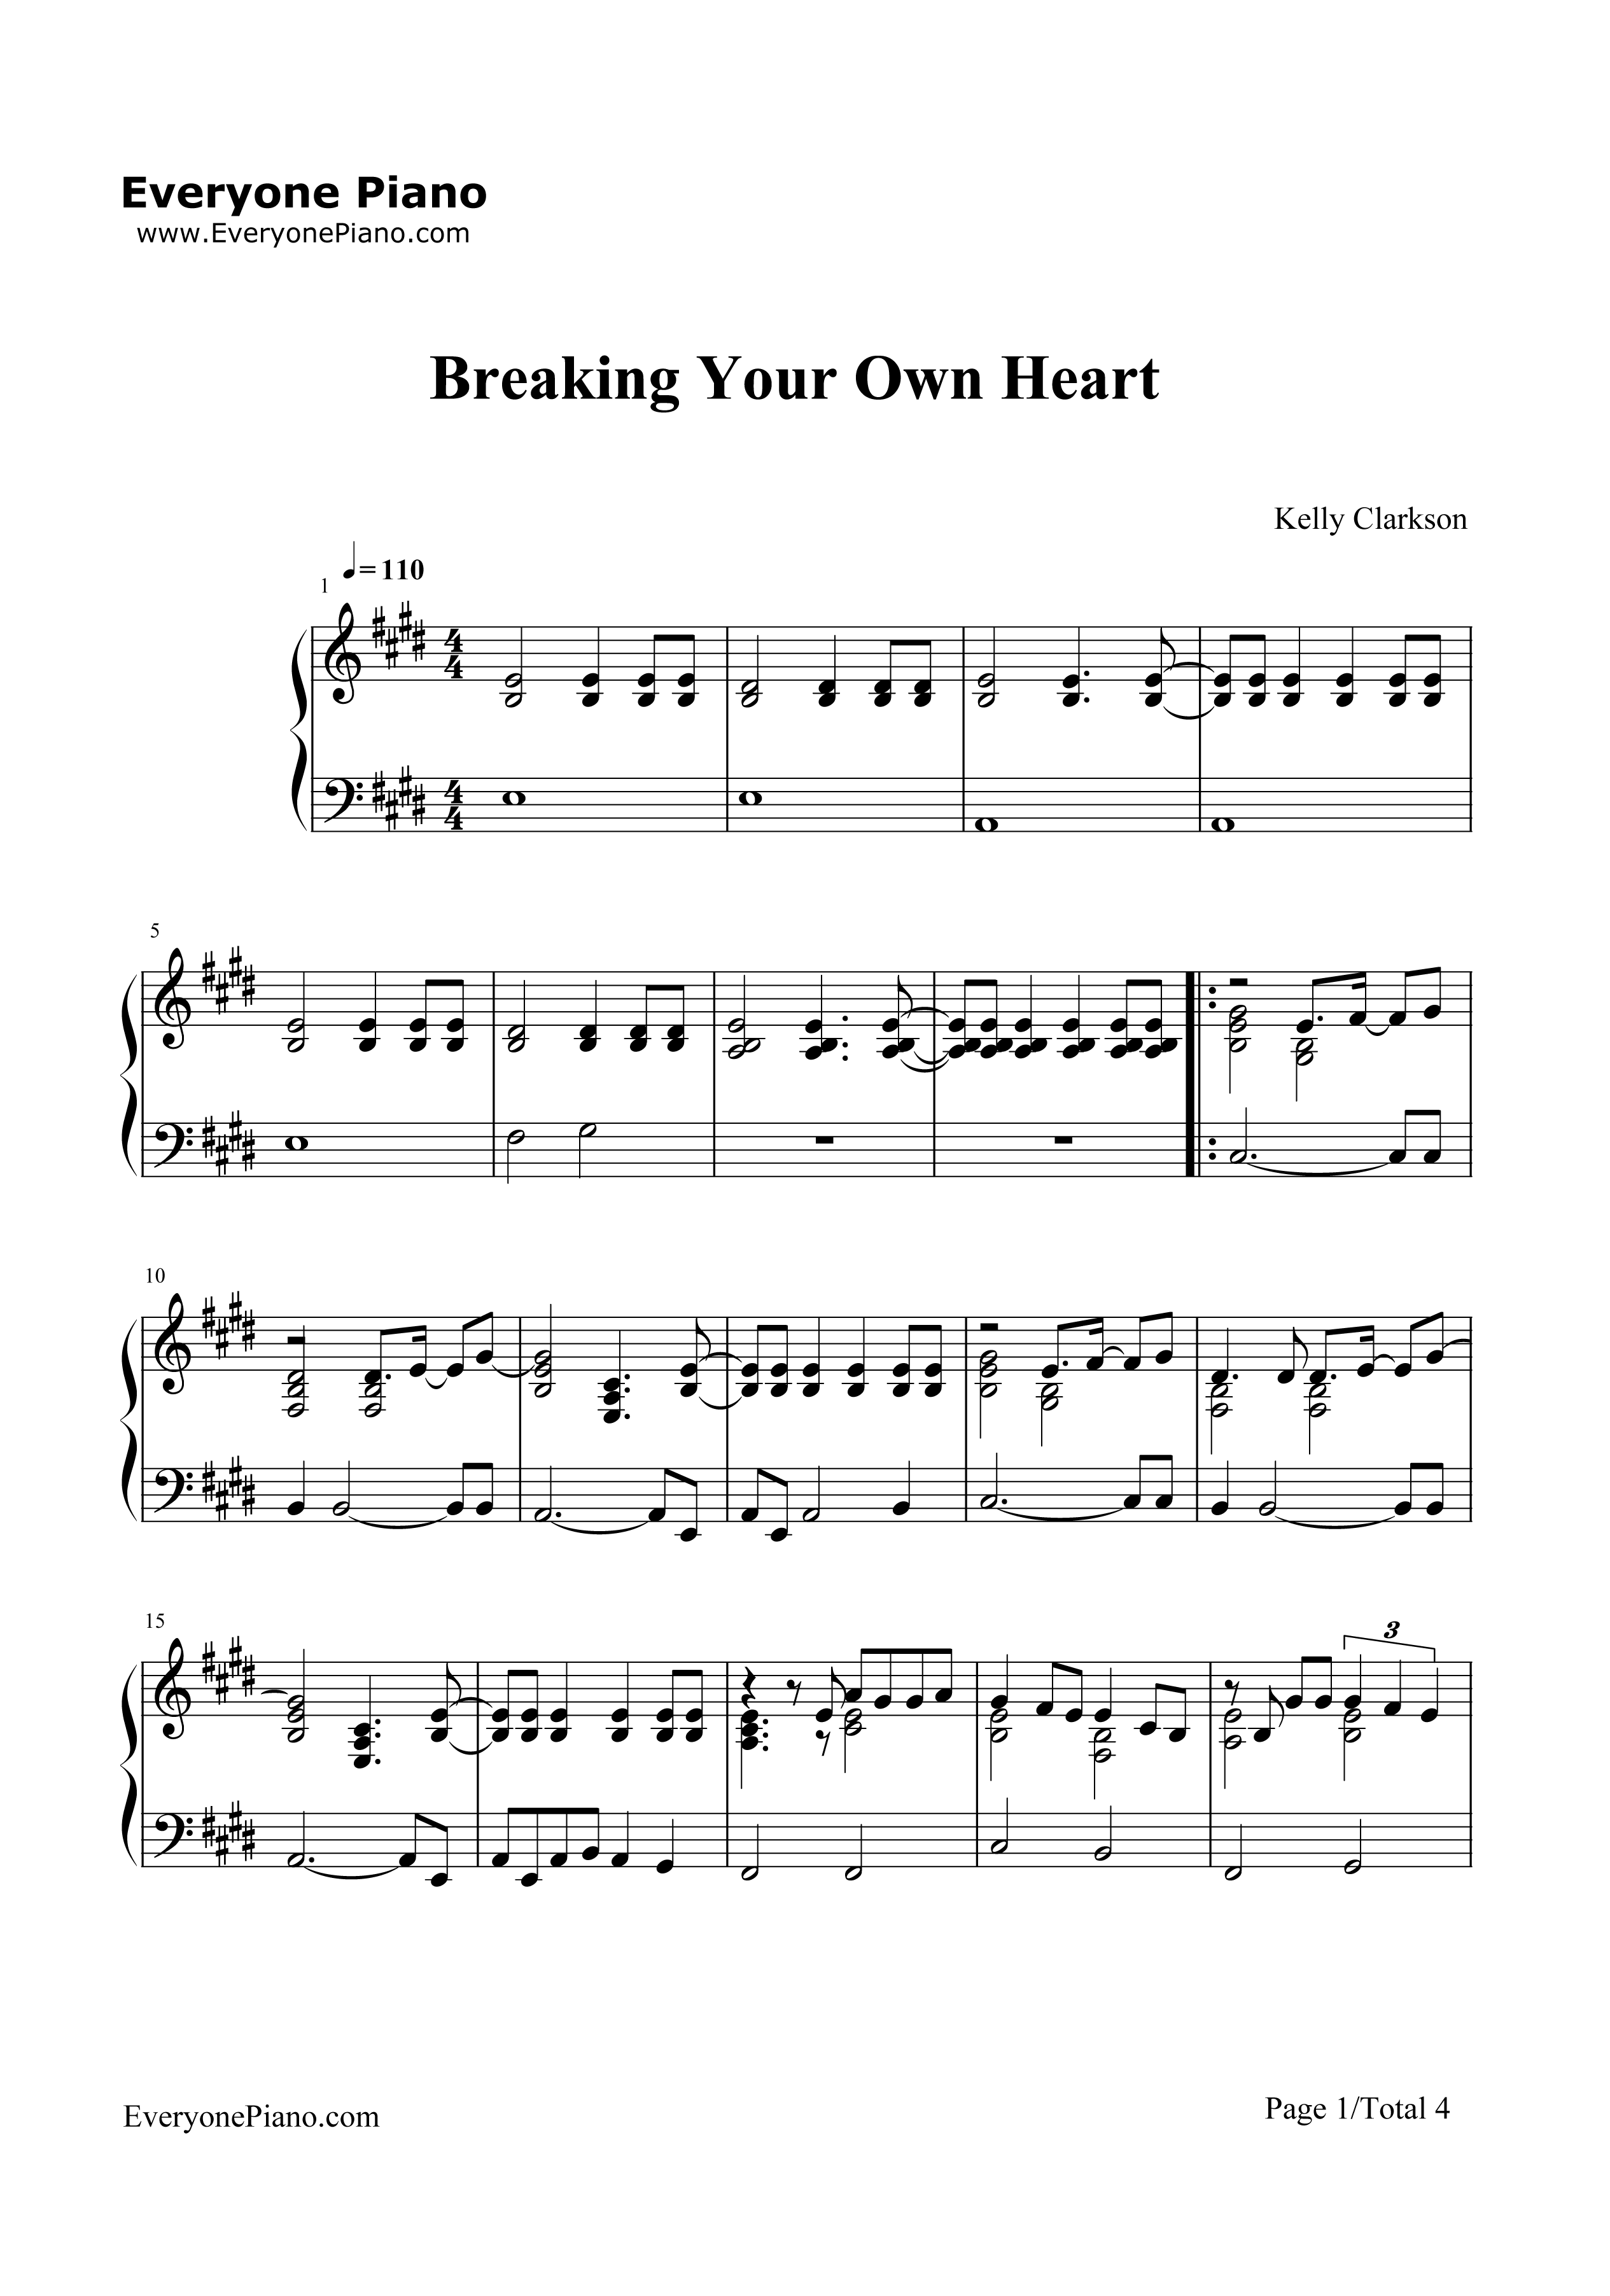 Breaking_Your_Own_Heart钢琴谱_Kelly_Clarkson